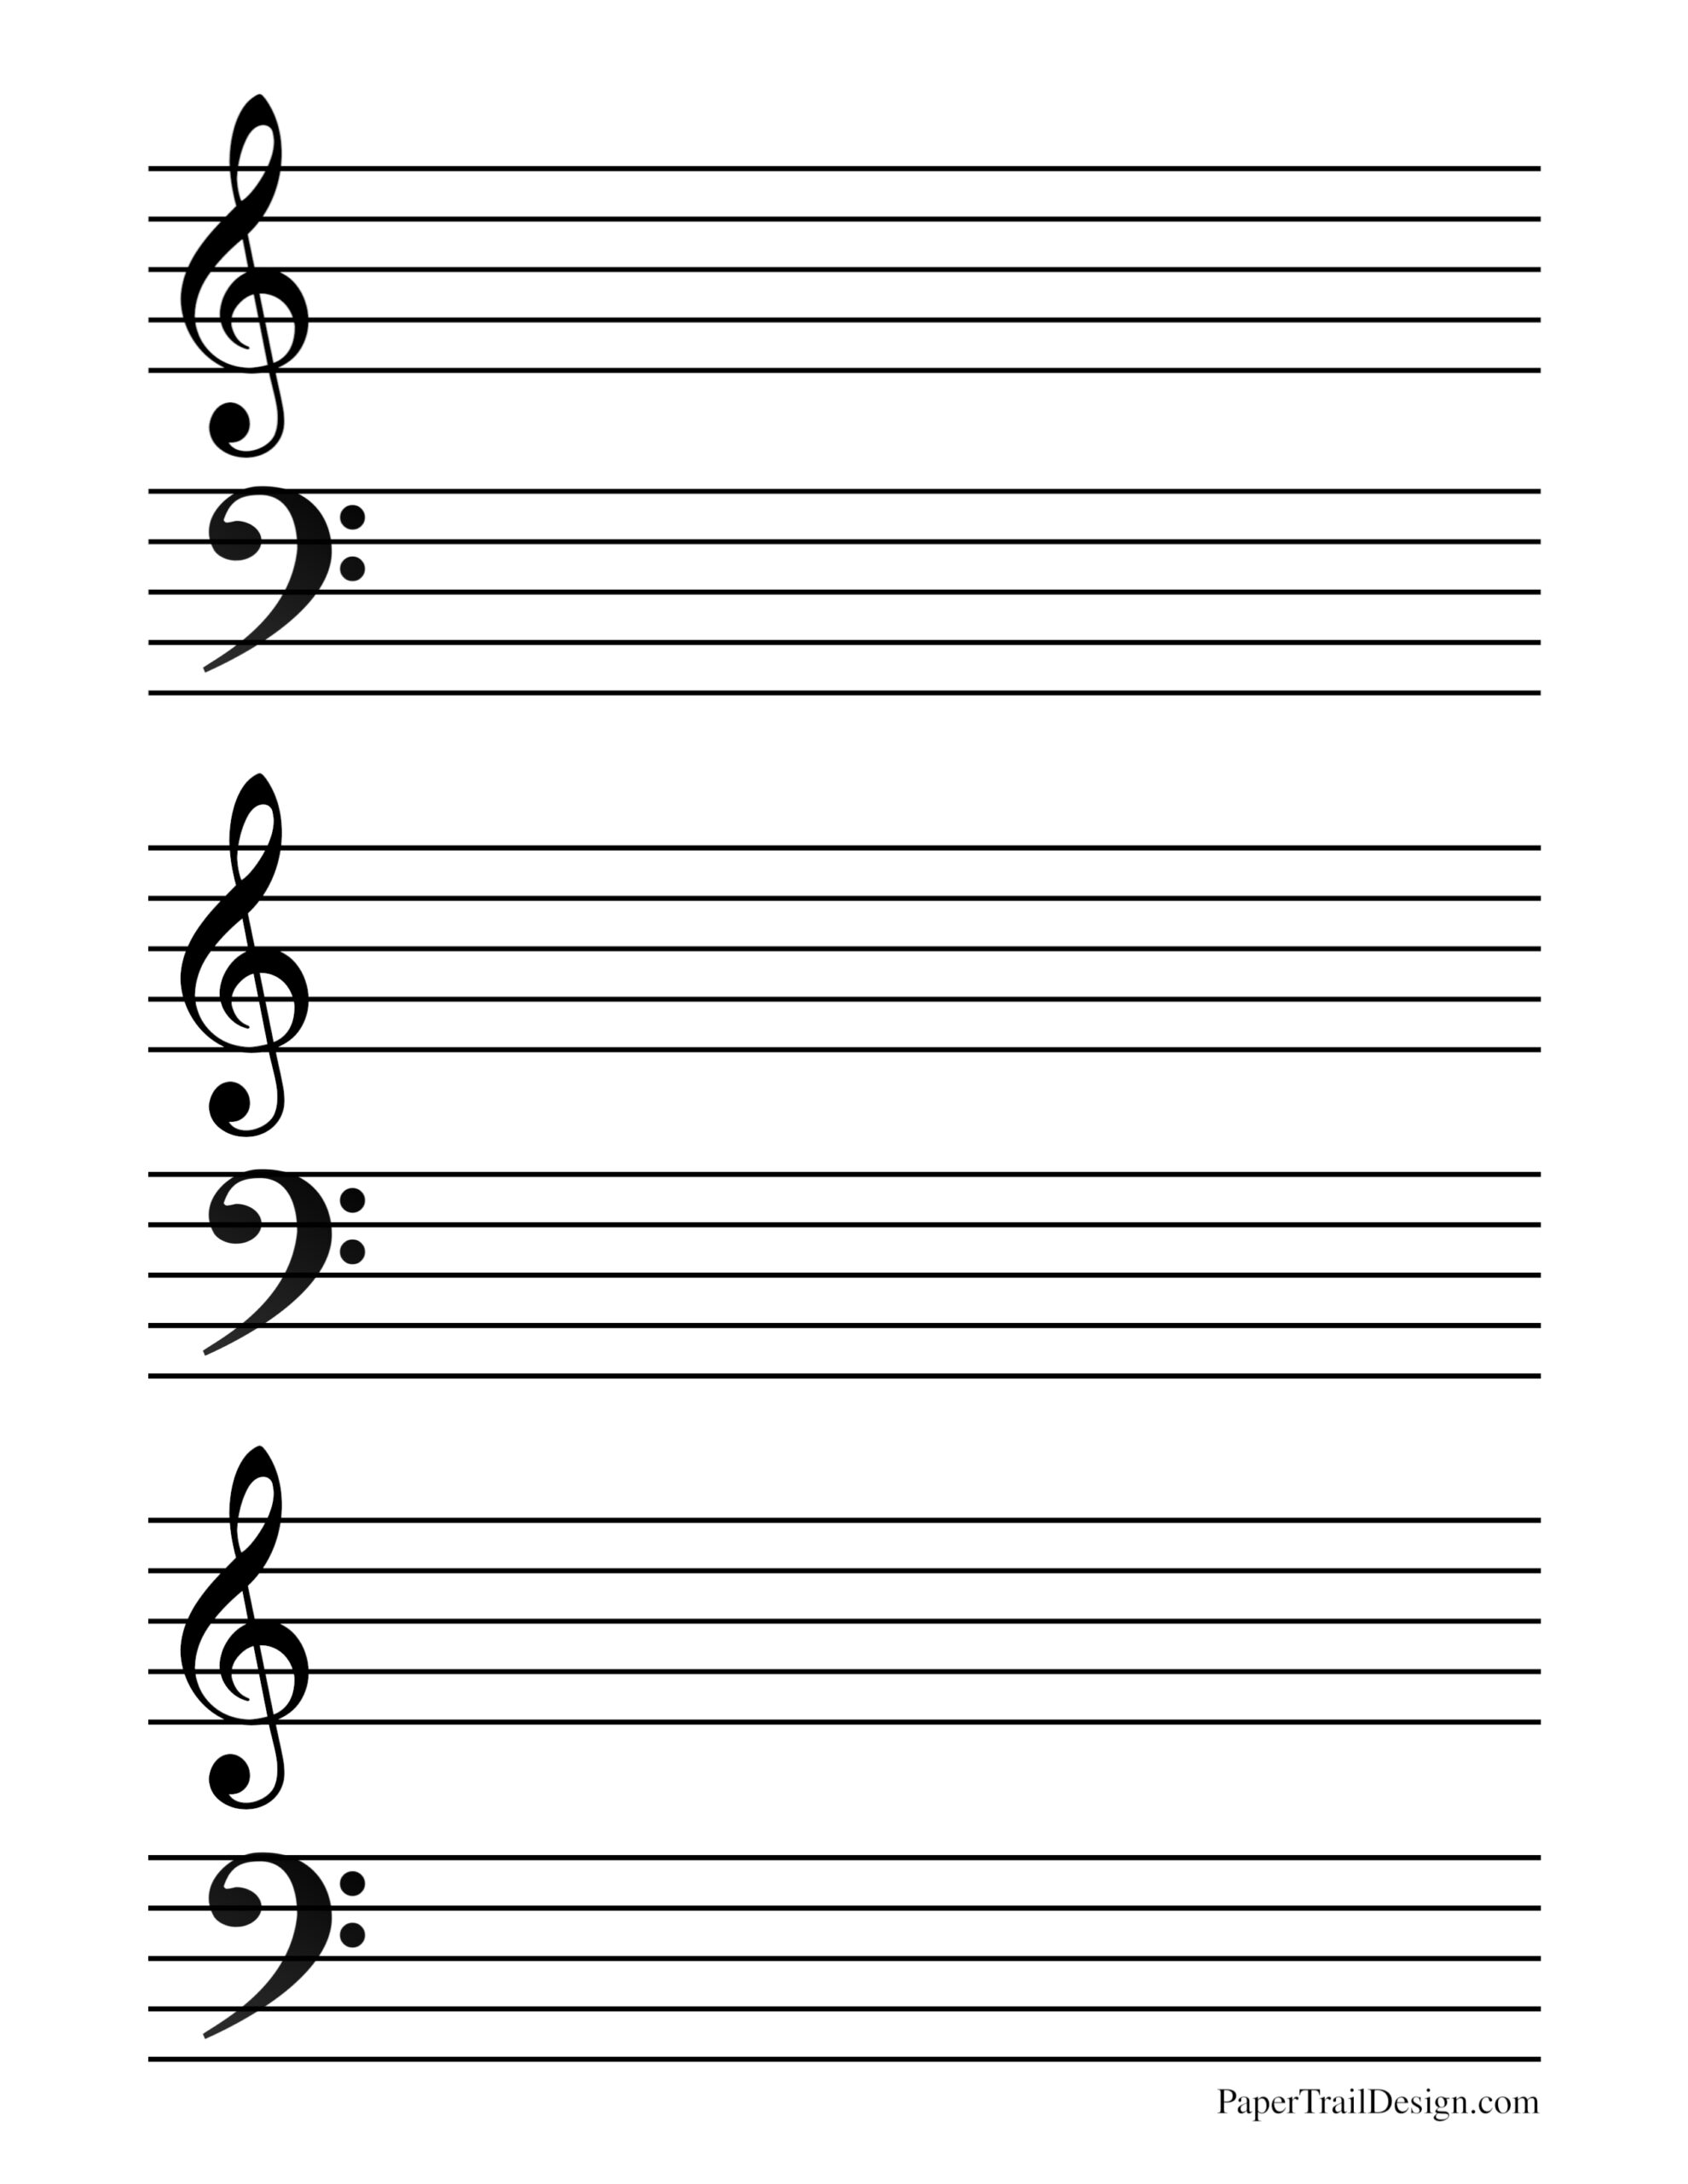 free printable music bar lines bass